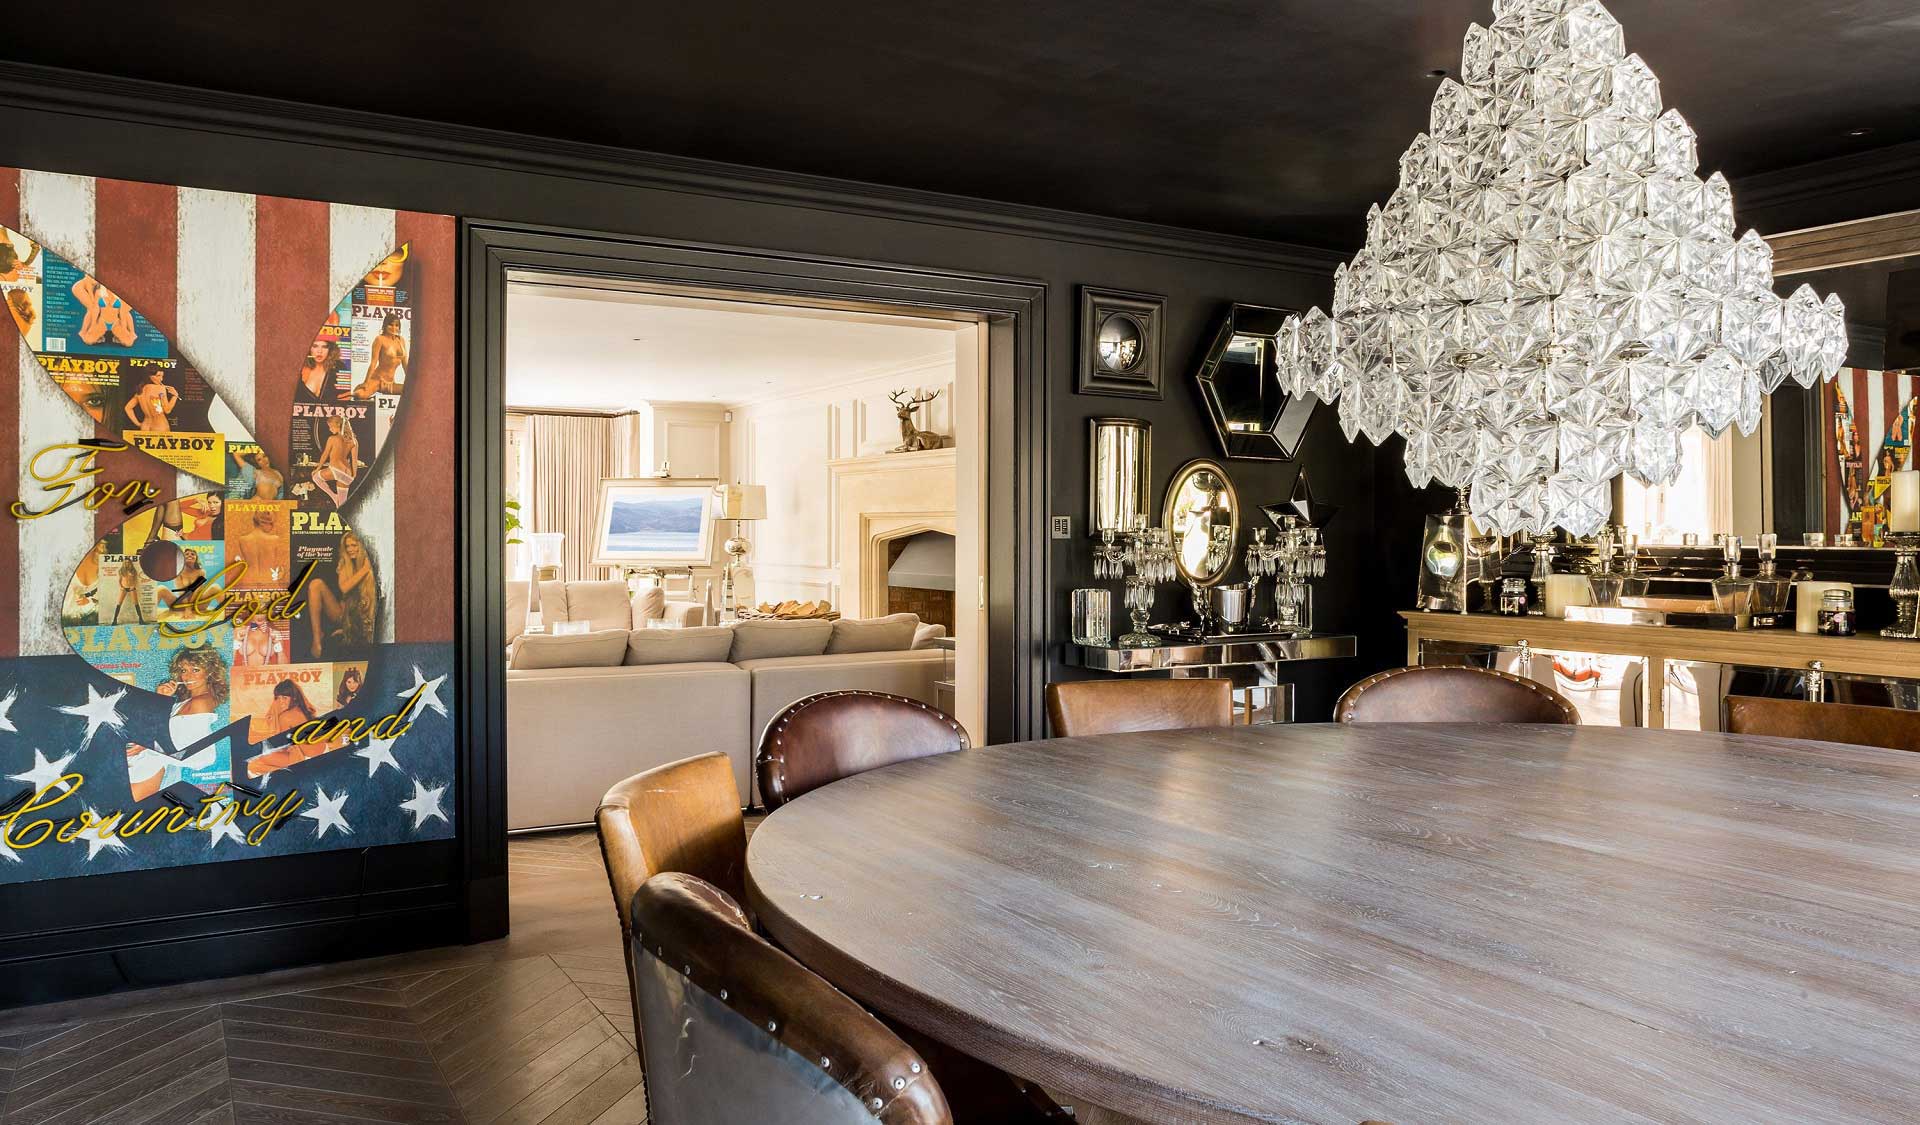 Dining room | John Evans | Interior Design